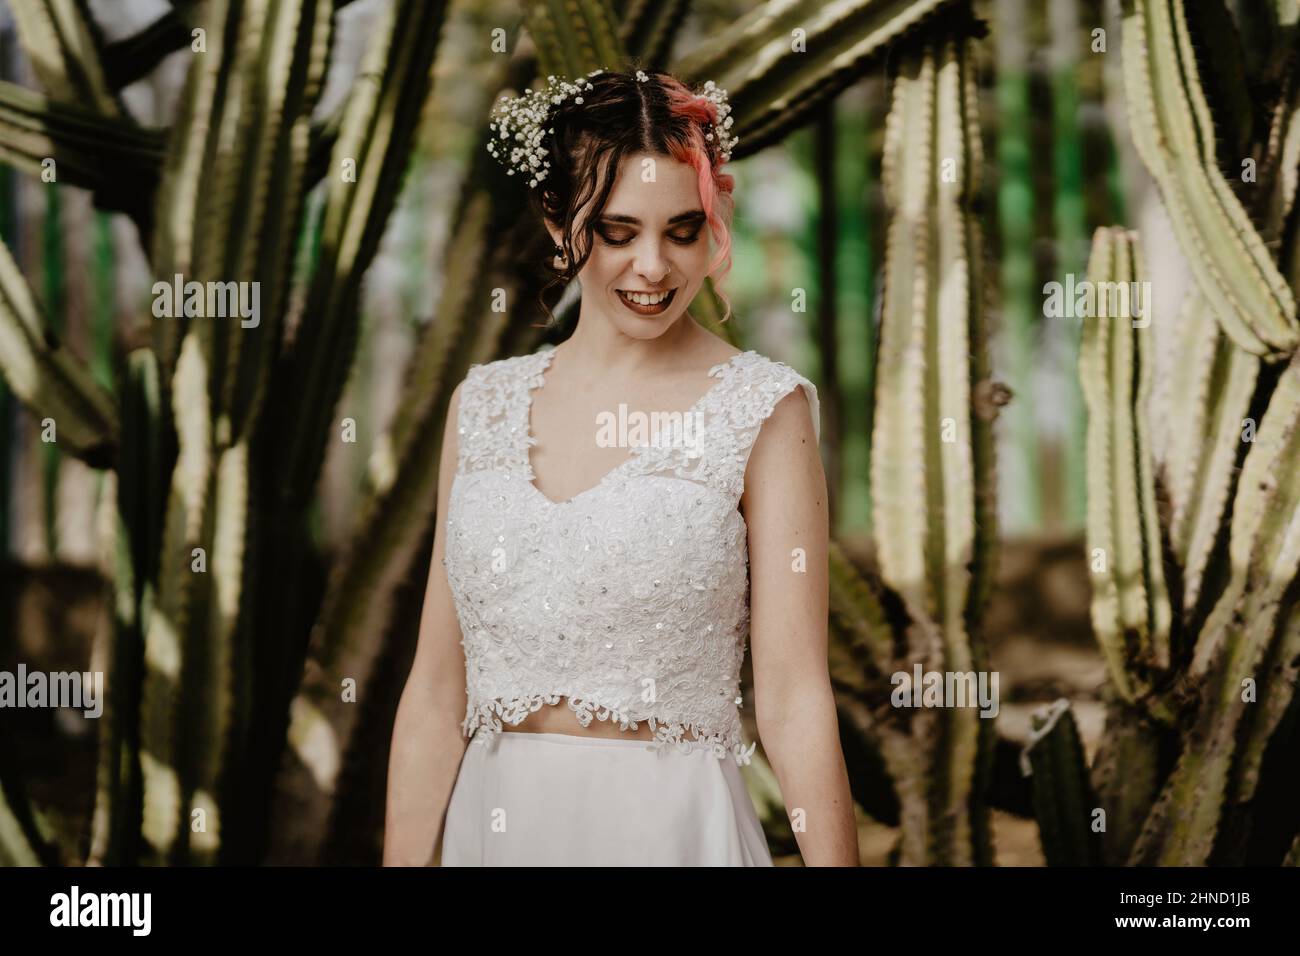 Strahlende junge Frau in weißem Oberteil und Rock lächelt, während sie am Hochzeitstag in der Nähe großer Kakteen im Garten steht und nach unten blickt Stockfoto